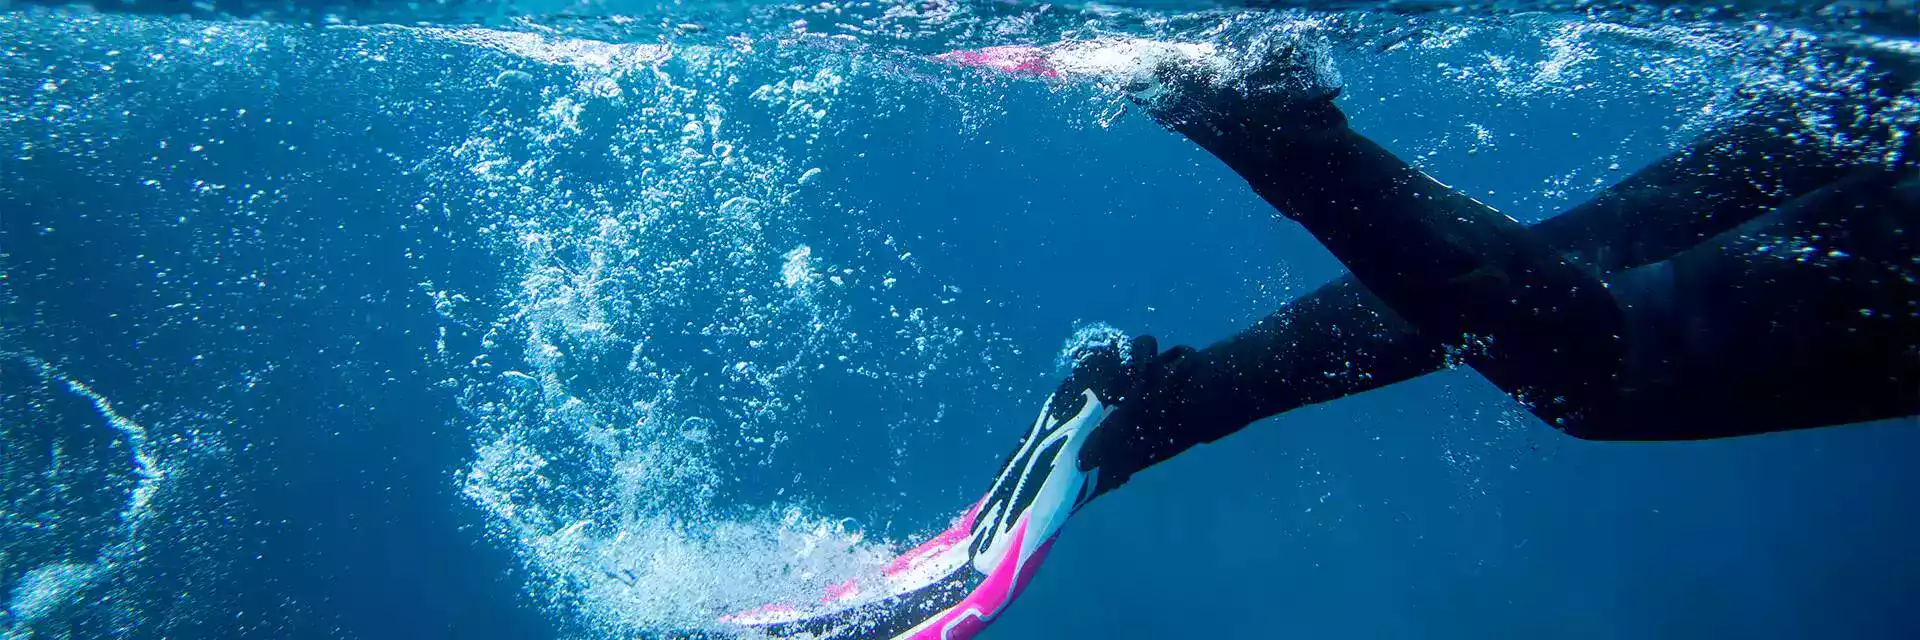 Esportes | Mergulho | Nadadeiras de Mergulho - doozysports